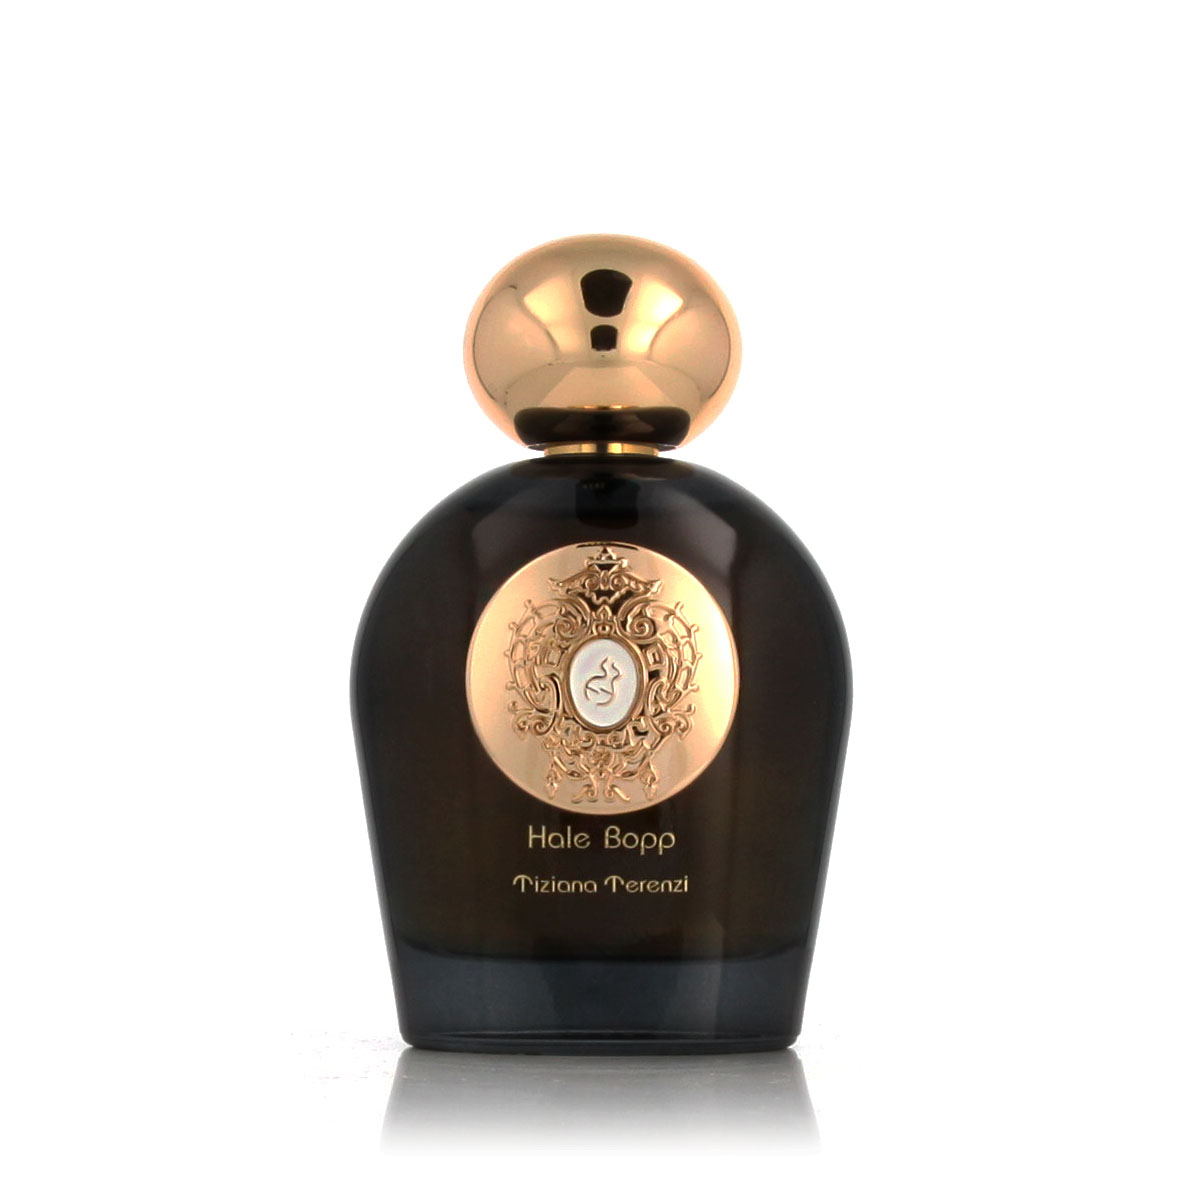 Tiziana Terenzi Hale Bopp 5 ml NIŠINIAI kvepalų mėginukas (atomaizeris) Unisex Parfum